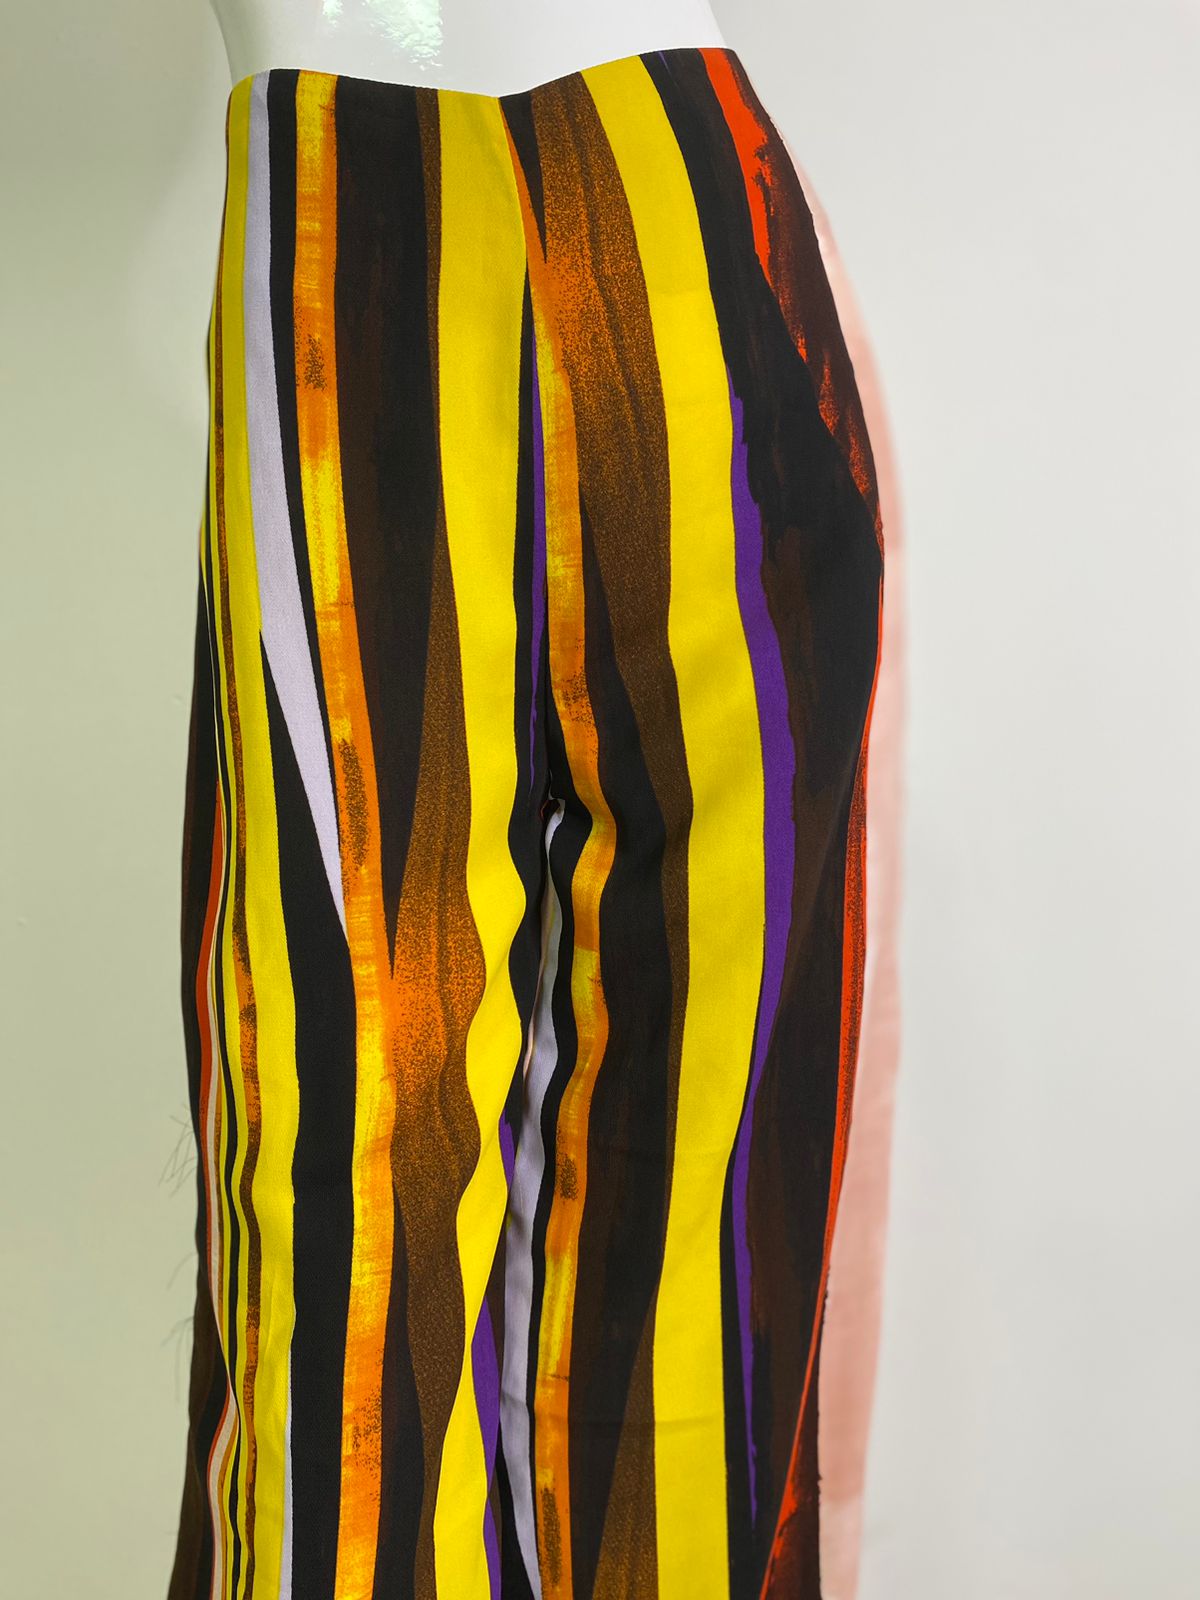 Pantalones anchos de rayas multicolor para mujer, vibrantes y modernos, ideales para cualquier ocasión, de KIKE RODRIGUEZ.